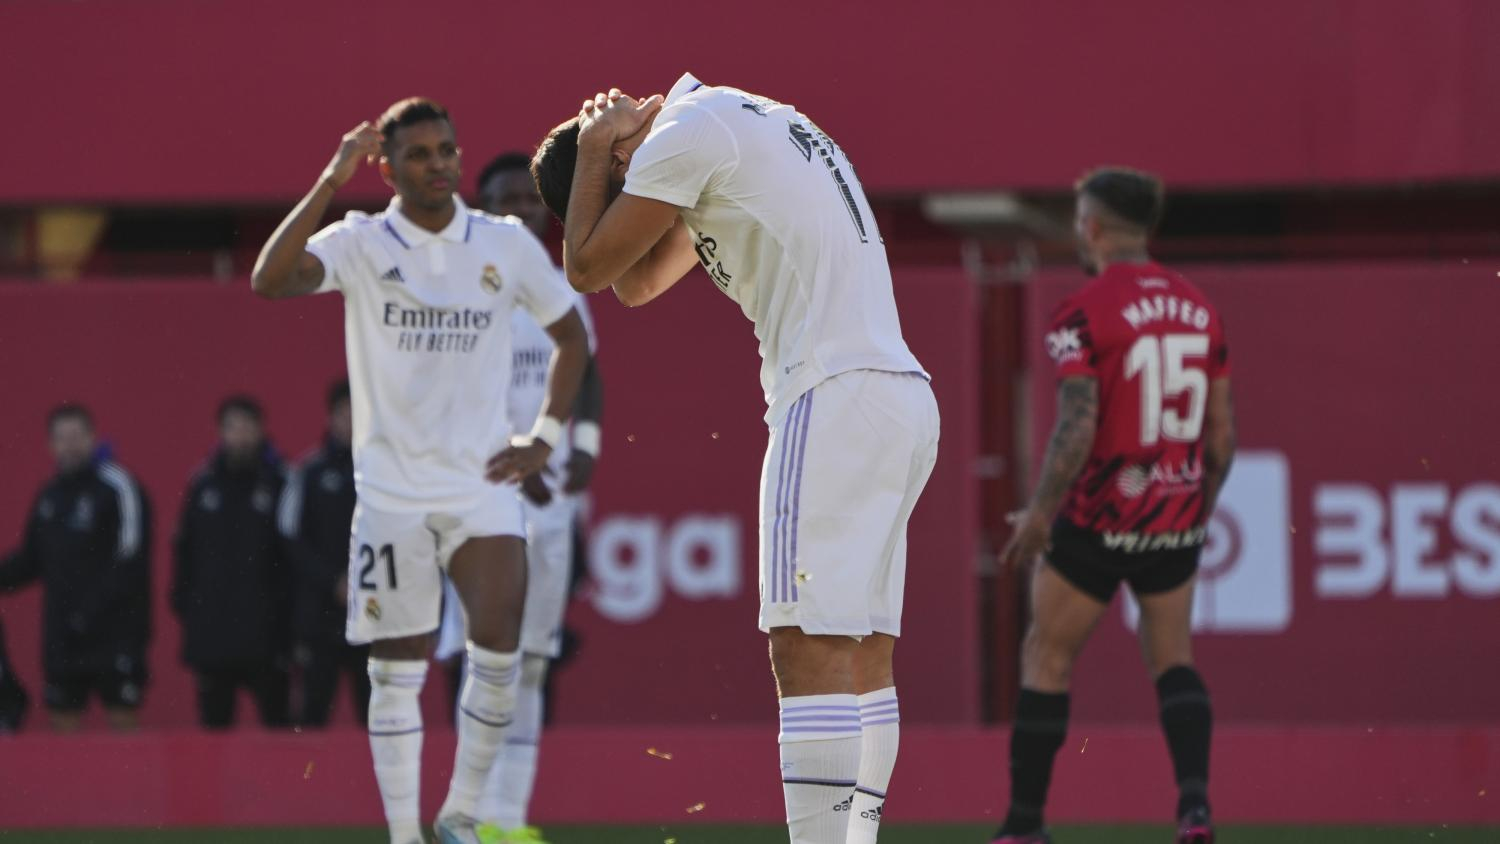 'Gà son' Asensio hỏng penalty, Real nhận thất bại ê chề